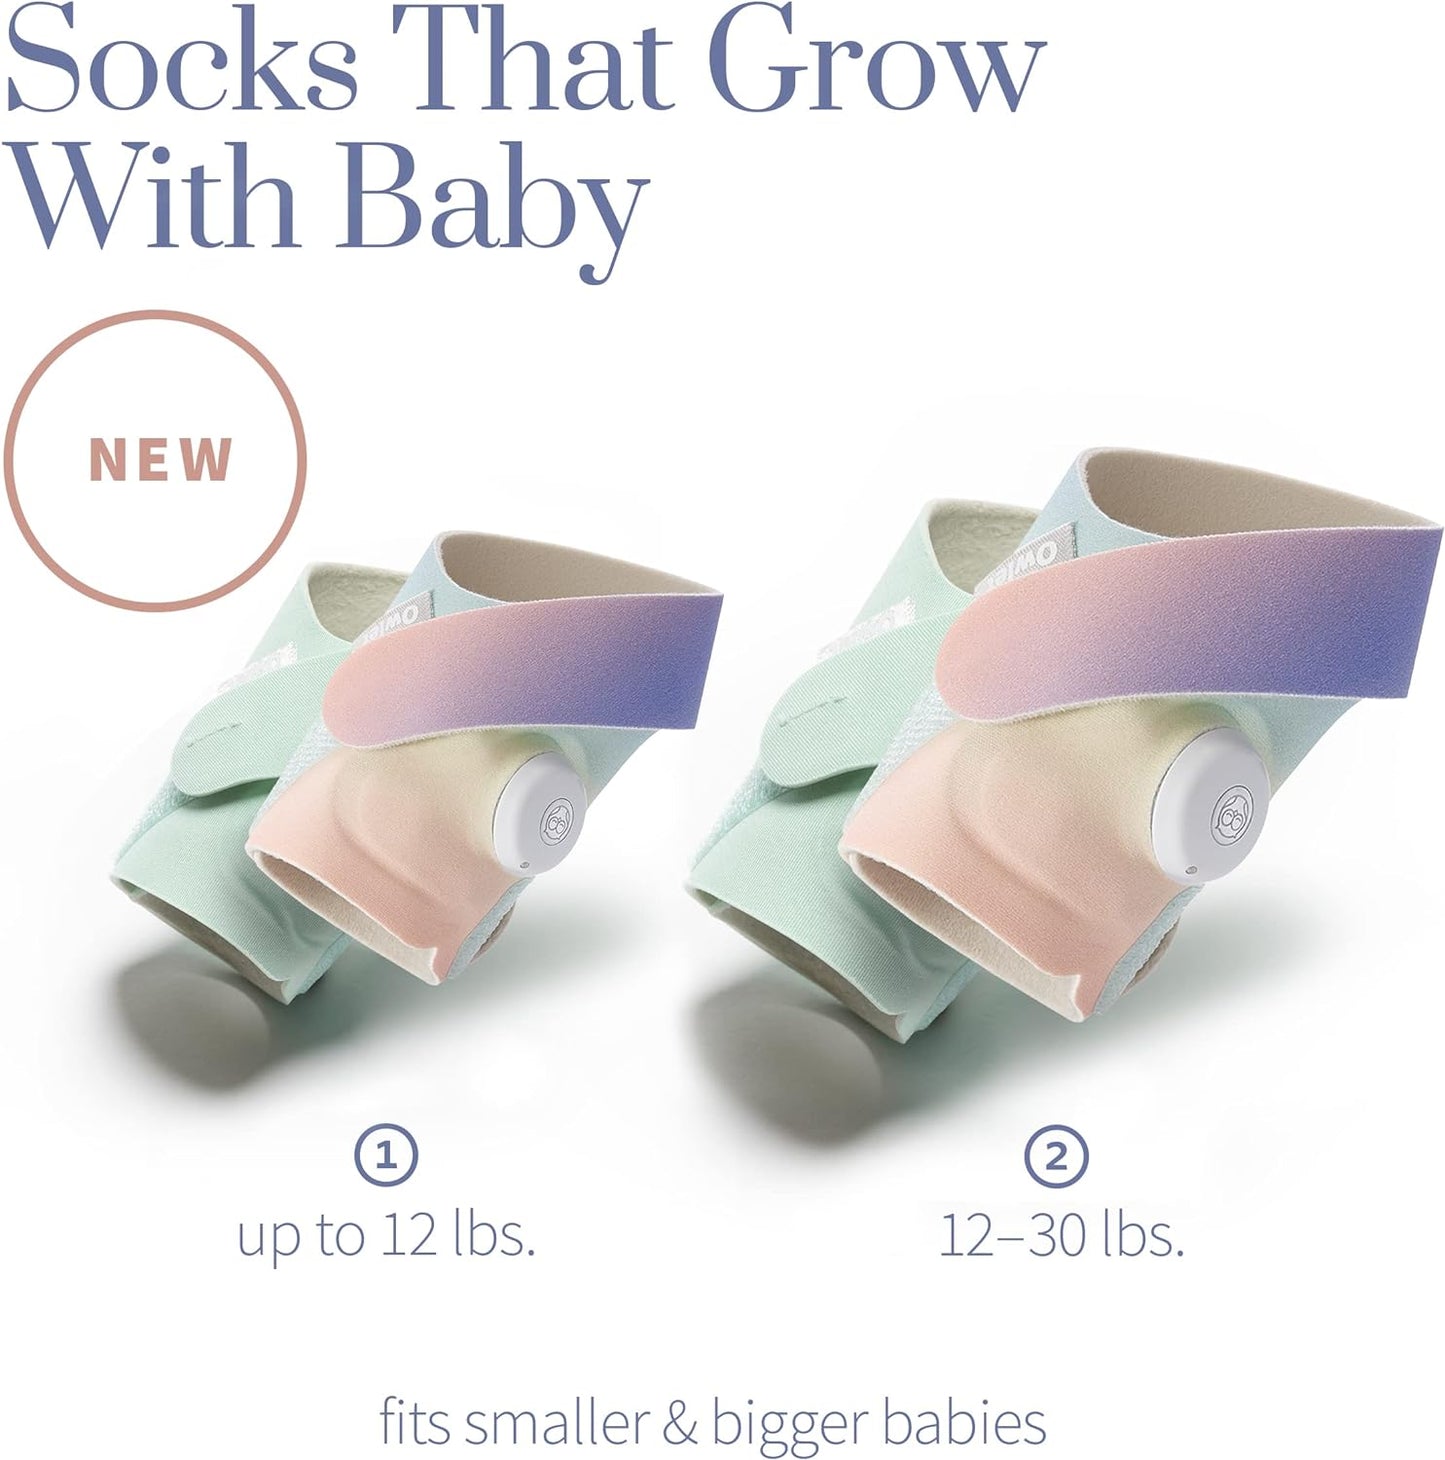 Owlet Smart Sock 3 - Baby Monitor - Rastreie frequência cardíaca, oxigênio e tendências de sono (0 a 18 meses)